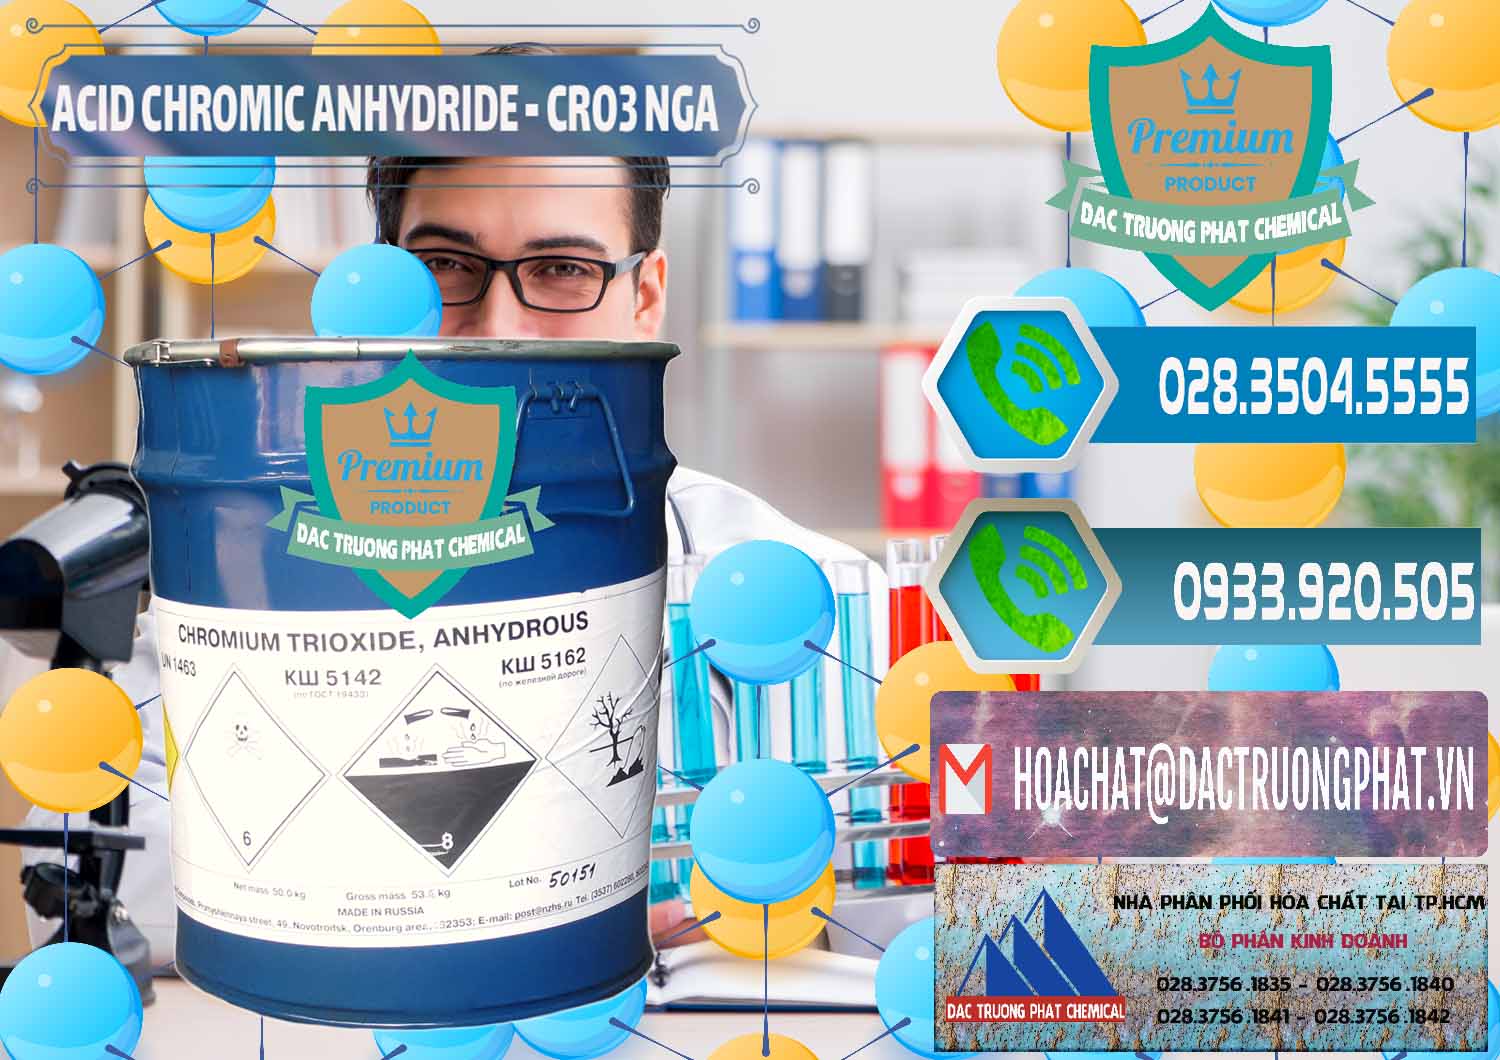 Cty chuyên cung cấp _ bán Acid Chromic Anhydride - Cromic CRO3 Nga Russia - 0006 - Nhà phân phối và nhập khẩu hóa chất tại TP.HCM - congtyhoachat.net